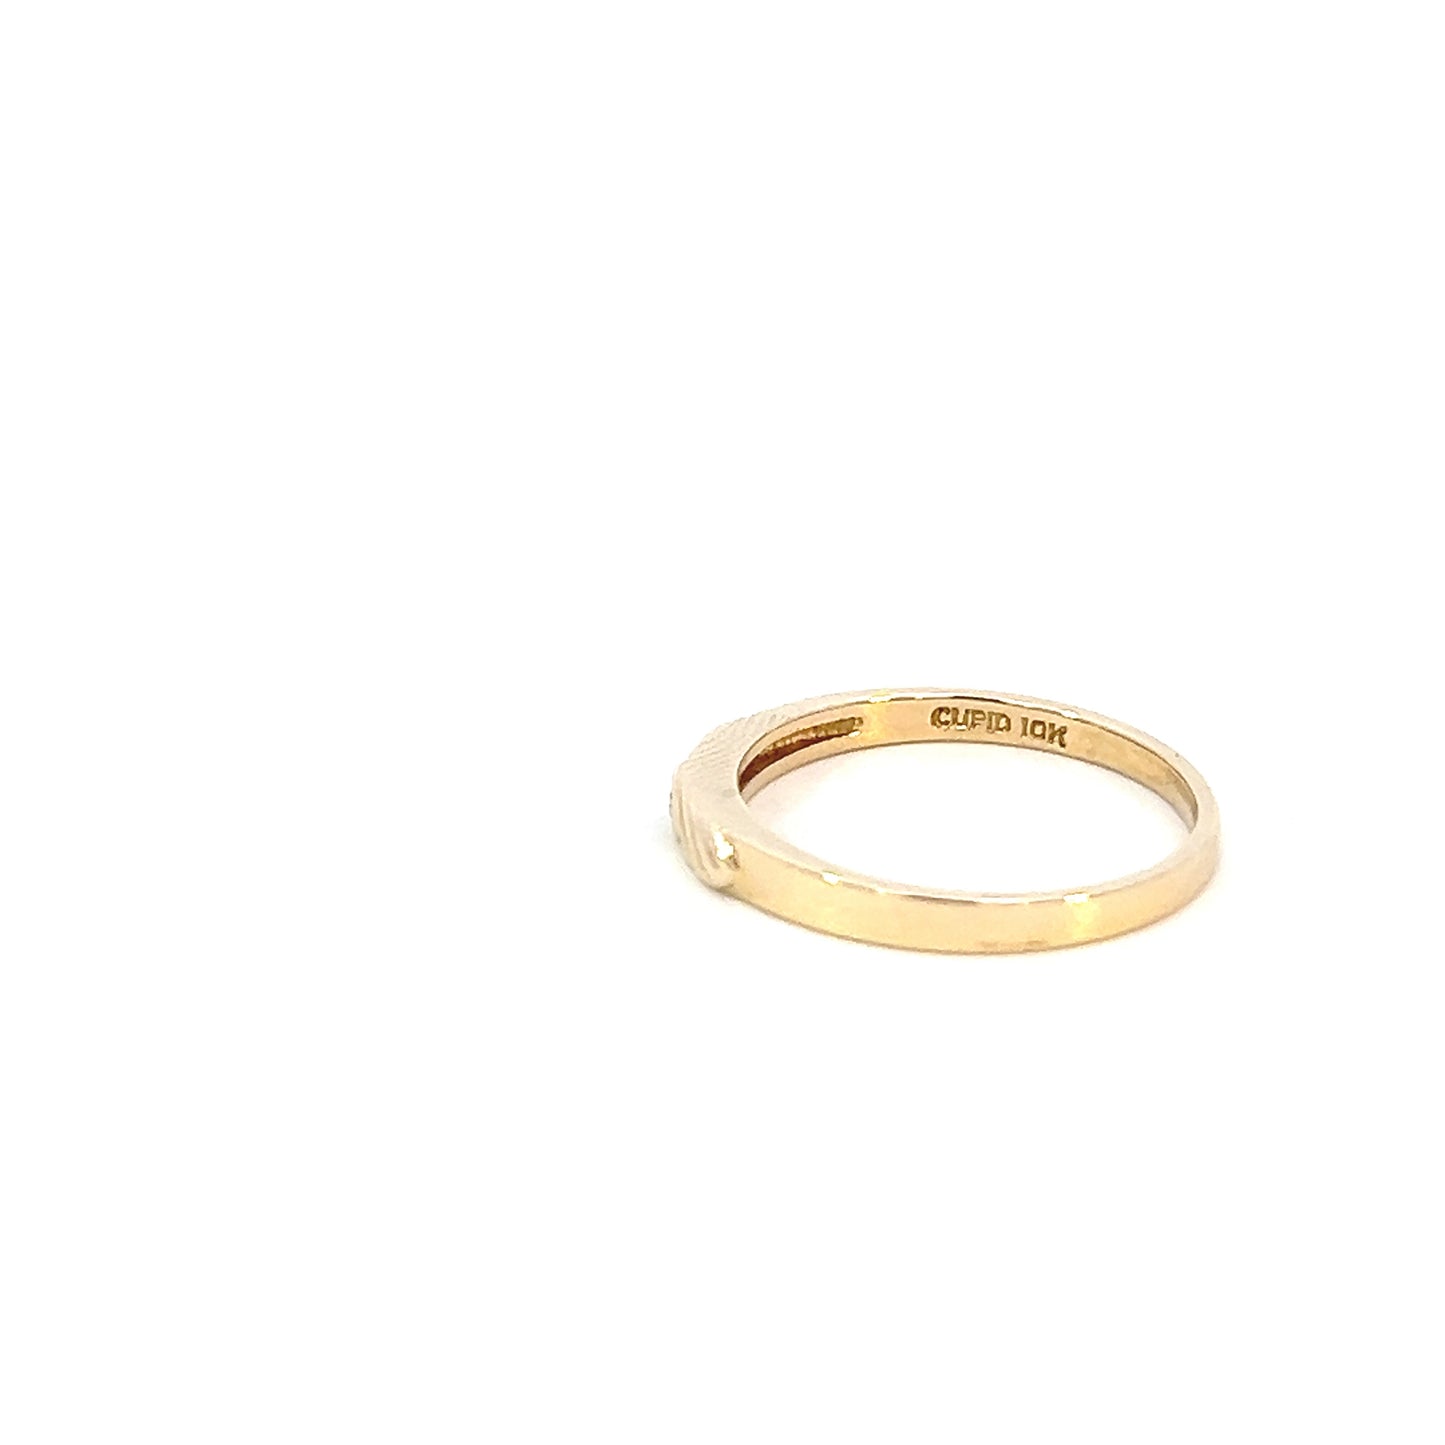 Minimalist Diamond Ring - 10k - Yellow Gold - Size 6.5